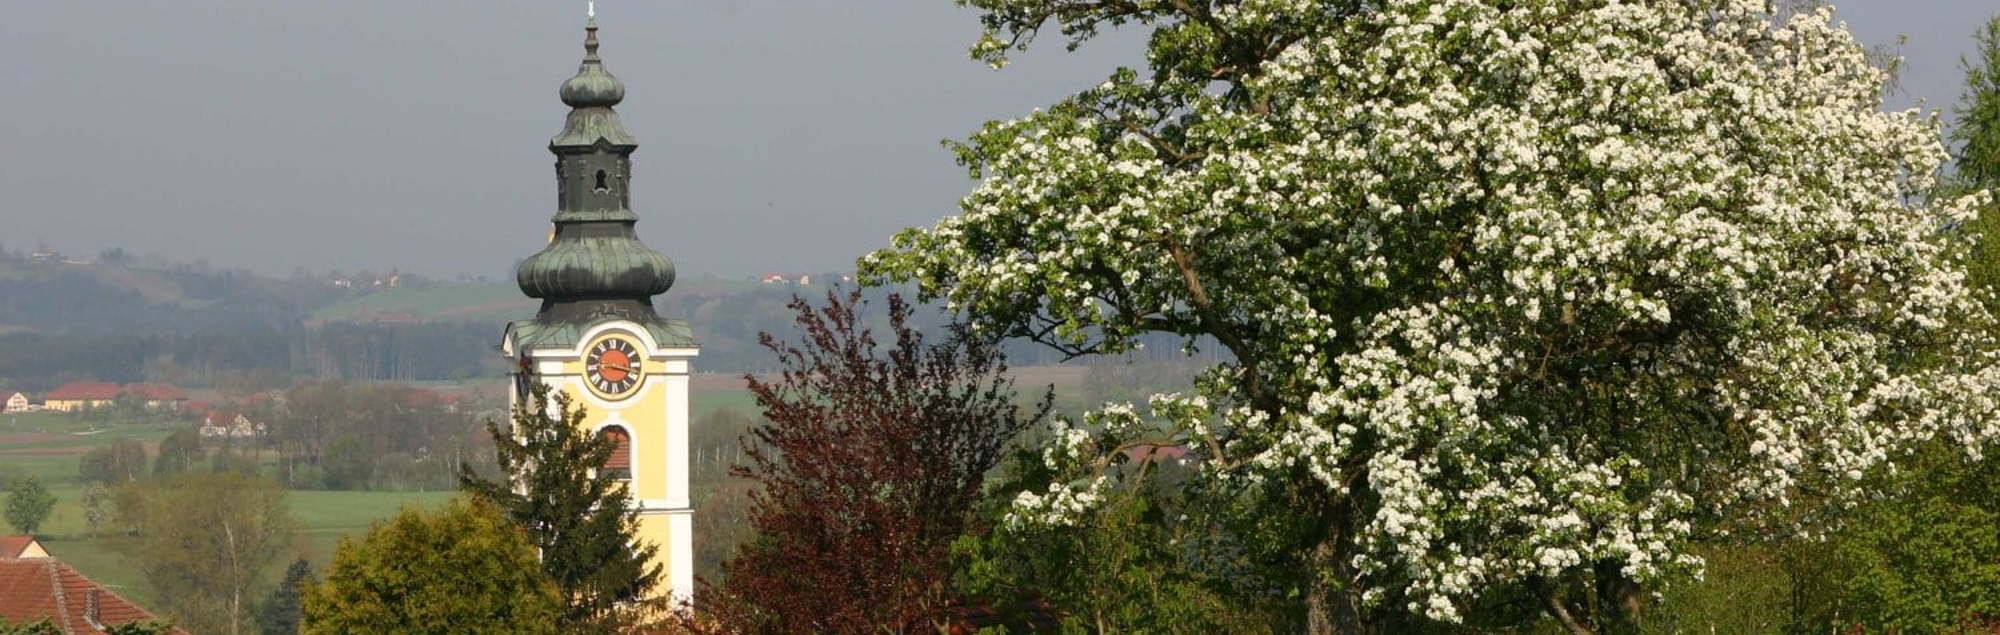 Kirchturm der Pfarre Waizenkirchen mit blühendem Baum